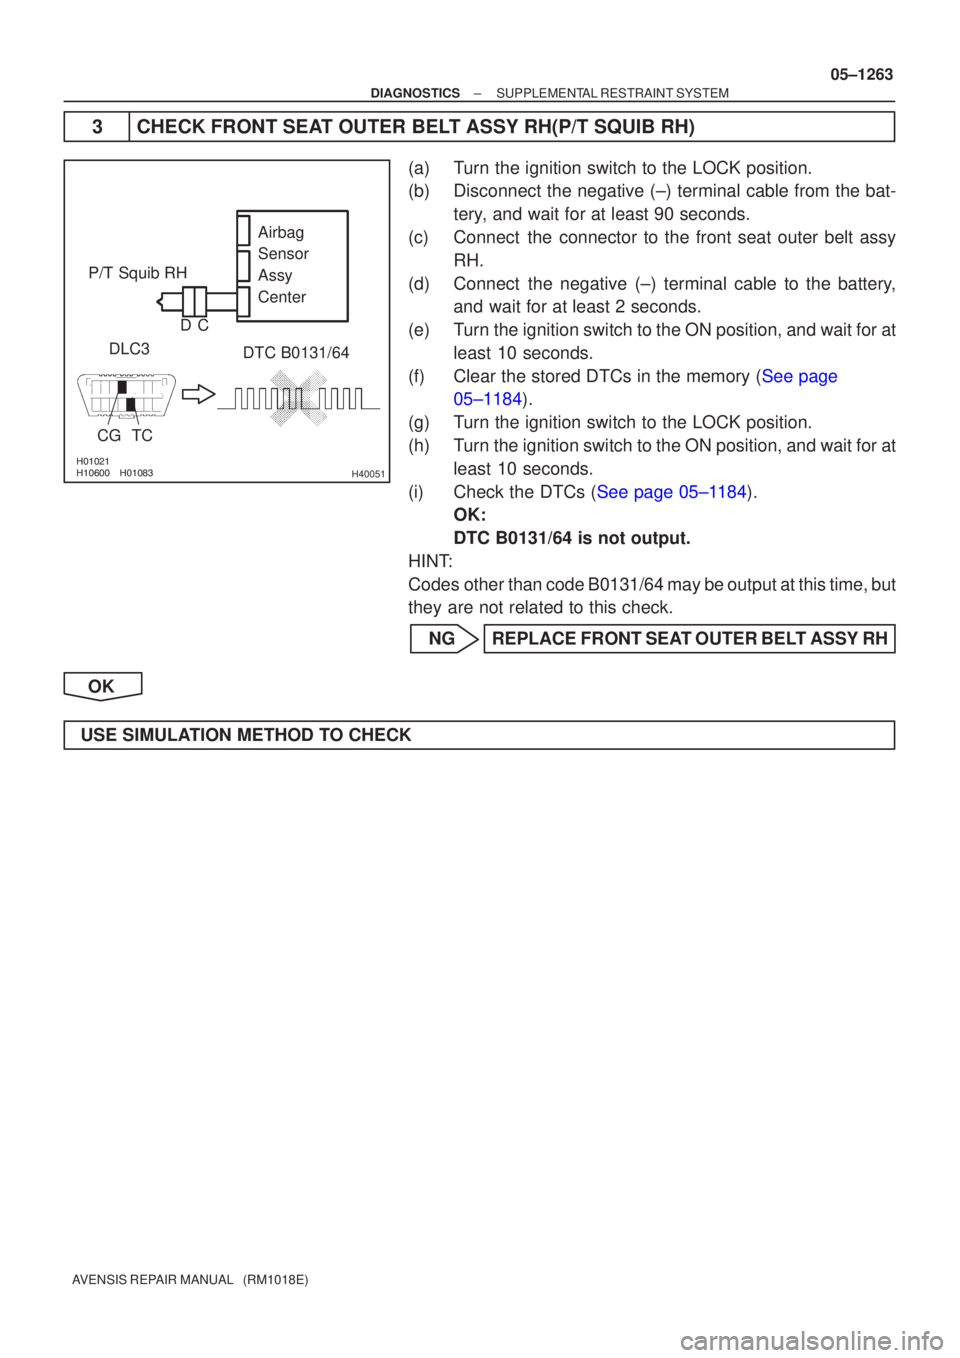 TOYOTA AVENSIS 2005  Service Repair Manual  H40051
P/T Squib RHDLC3
CG TC DTC B0131/64
Airbag
Sensor
Assy
Center
C
D
±
DIAGNOSTICS SUPPLEMENTAL RESTRAINT SYSTEM
05±1263
AVENSIS REPAIR MANUAL   (RM1018E)
3 CHECK FRONT SEAT O